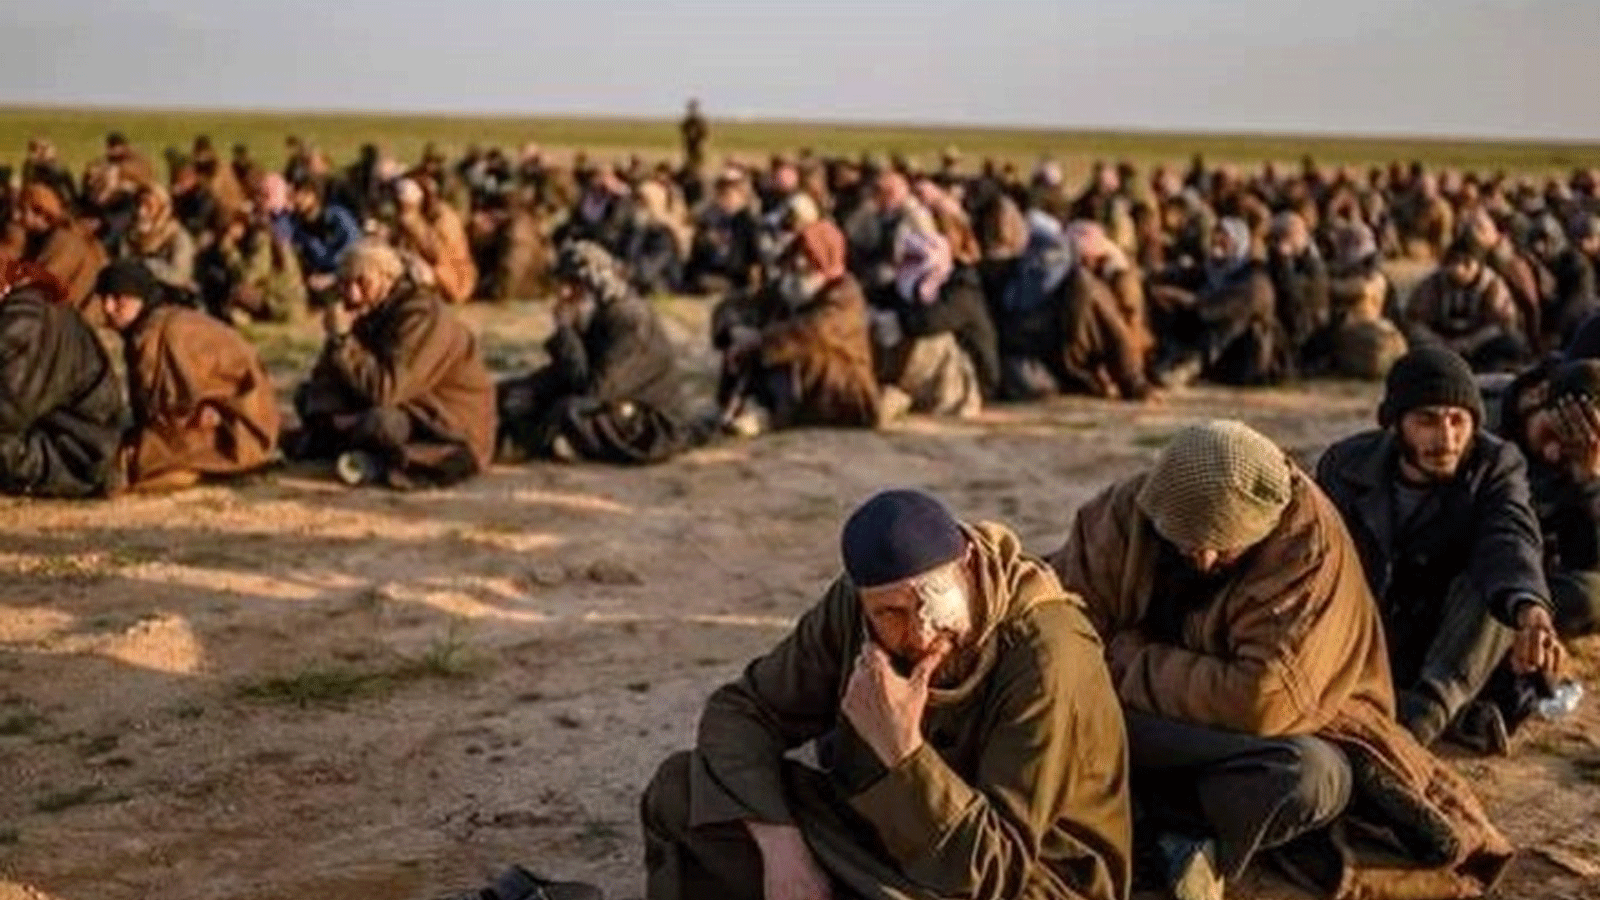 مجموعة من عناصر داعش المعتقلين سلمتهم قوات سوريا الديمقراطية الى العراق مطلع عام 2019 (تويتر)